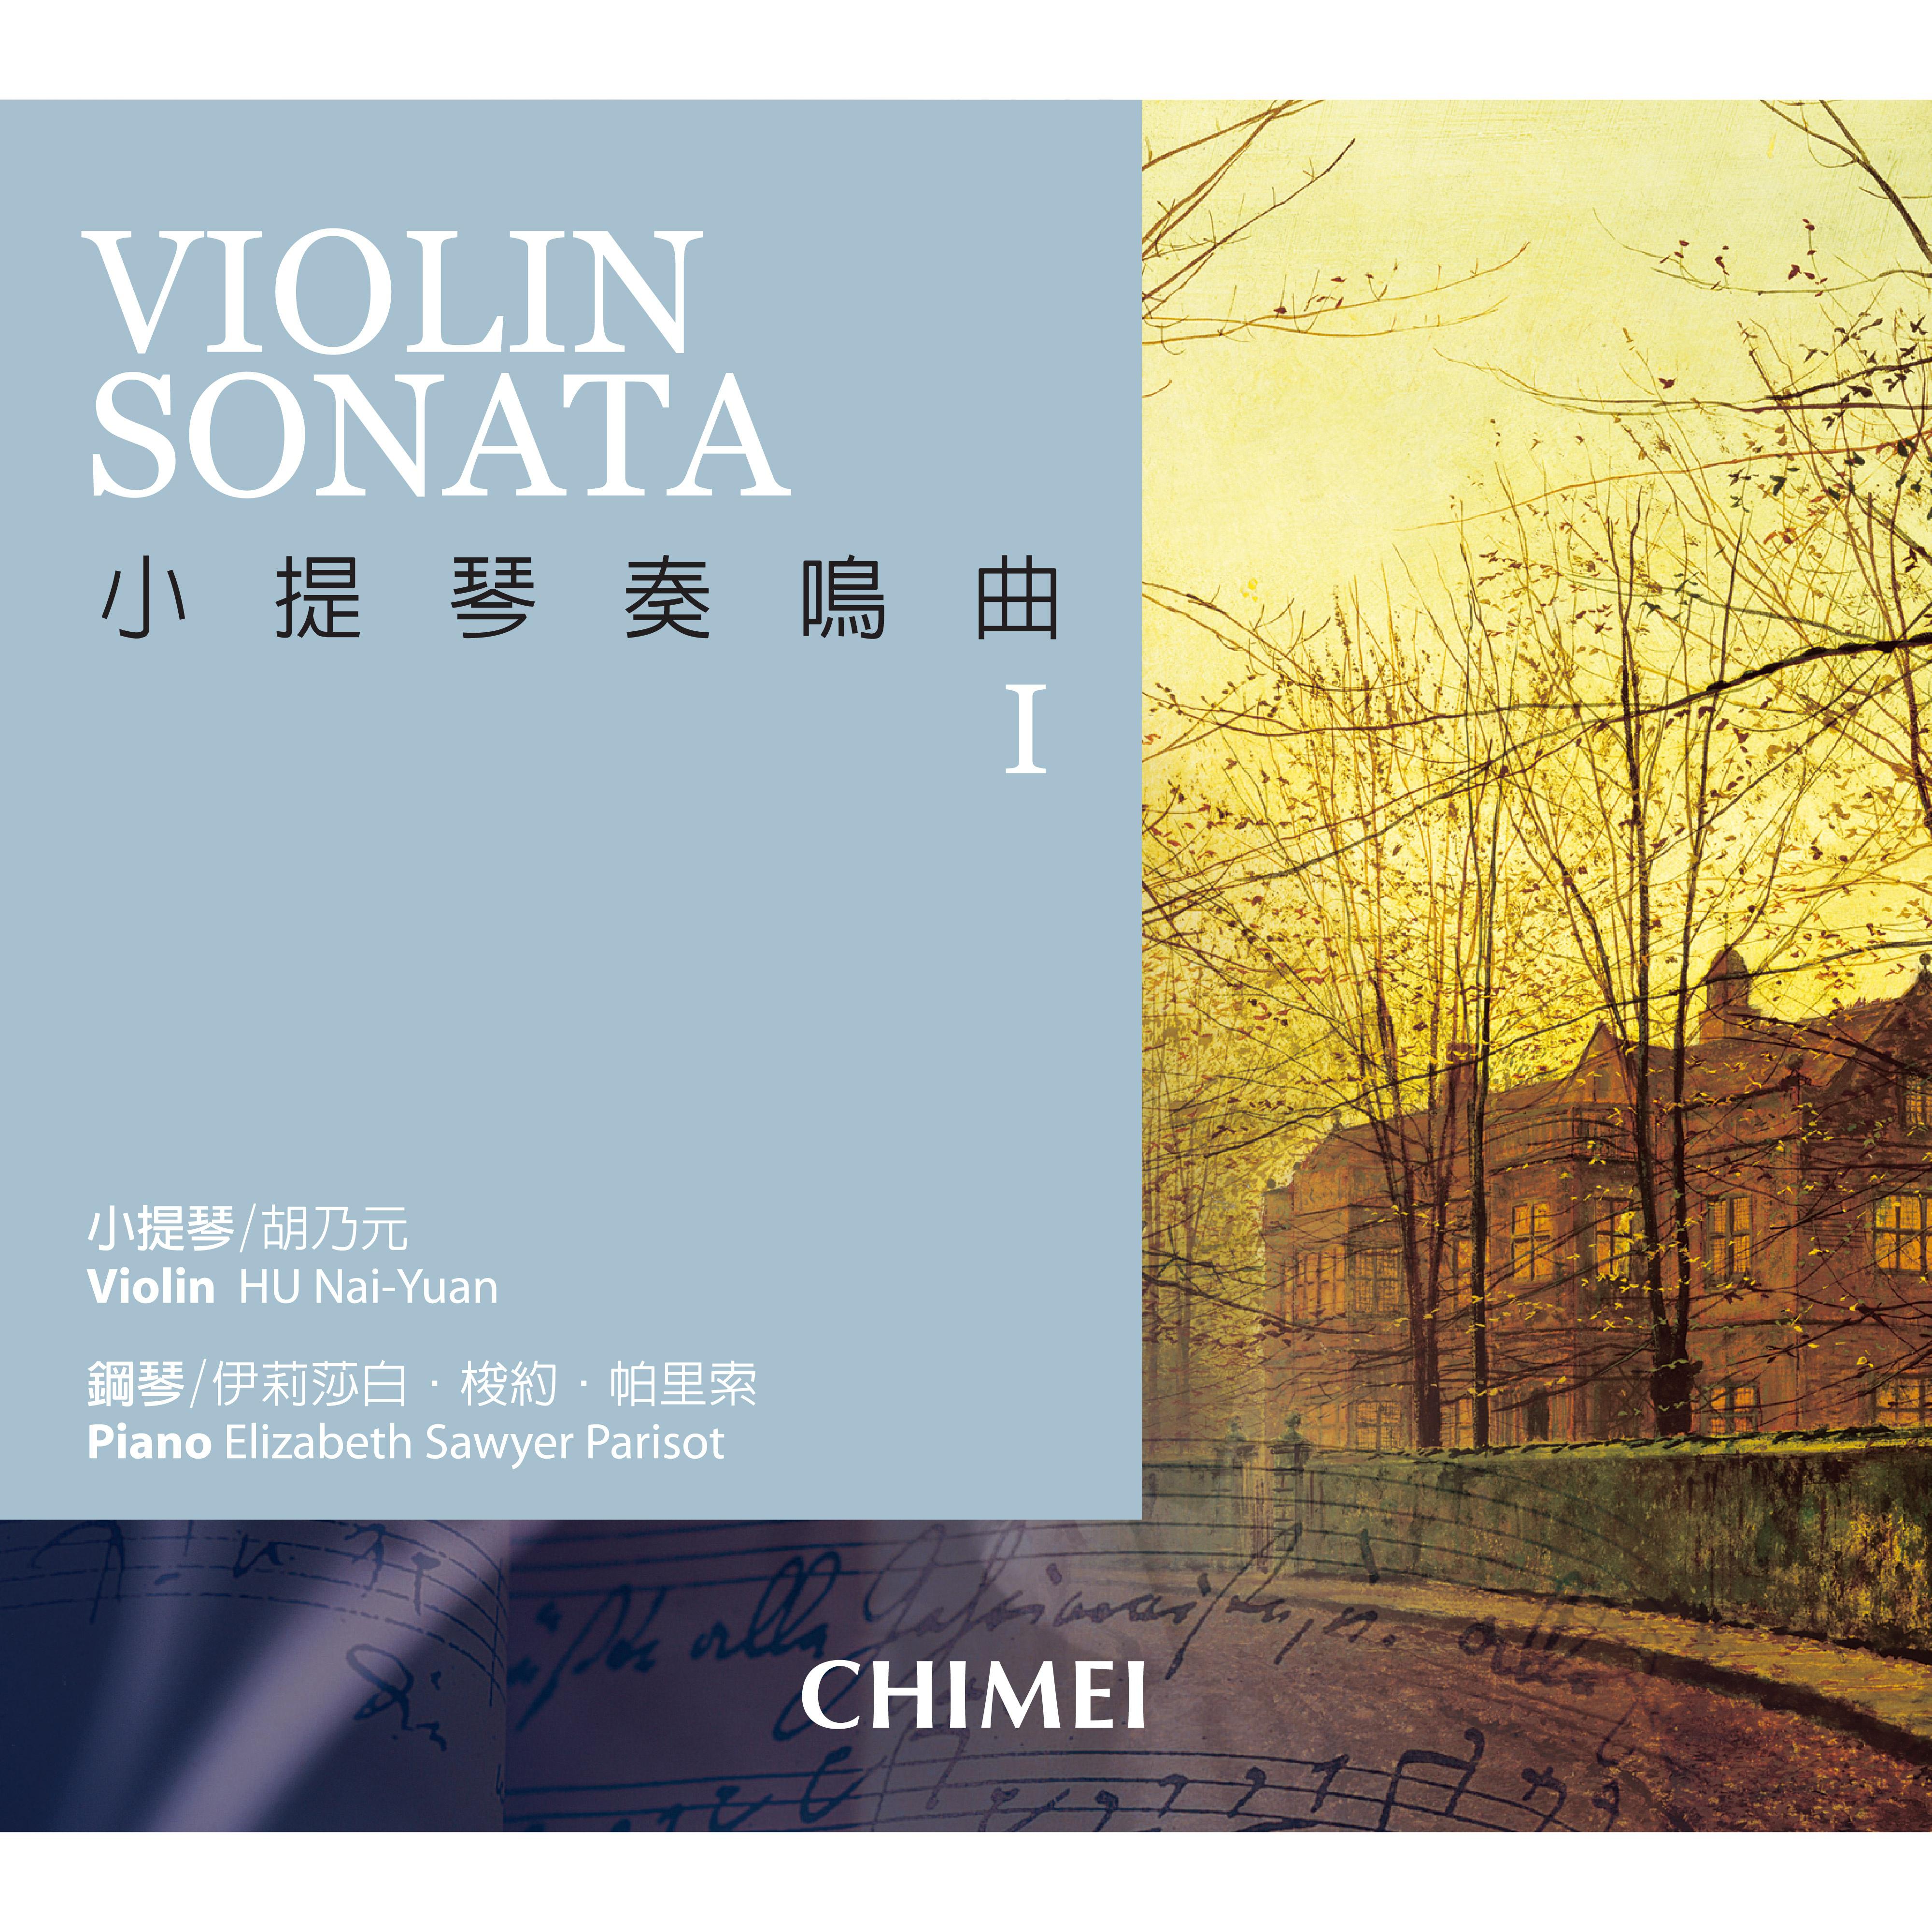 Handel: Sonata for Violin and Basso Continuo in D Major, HWV 371: . Affetuoso